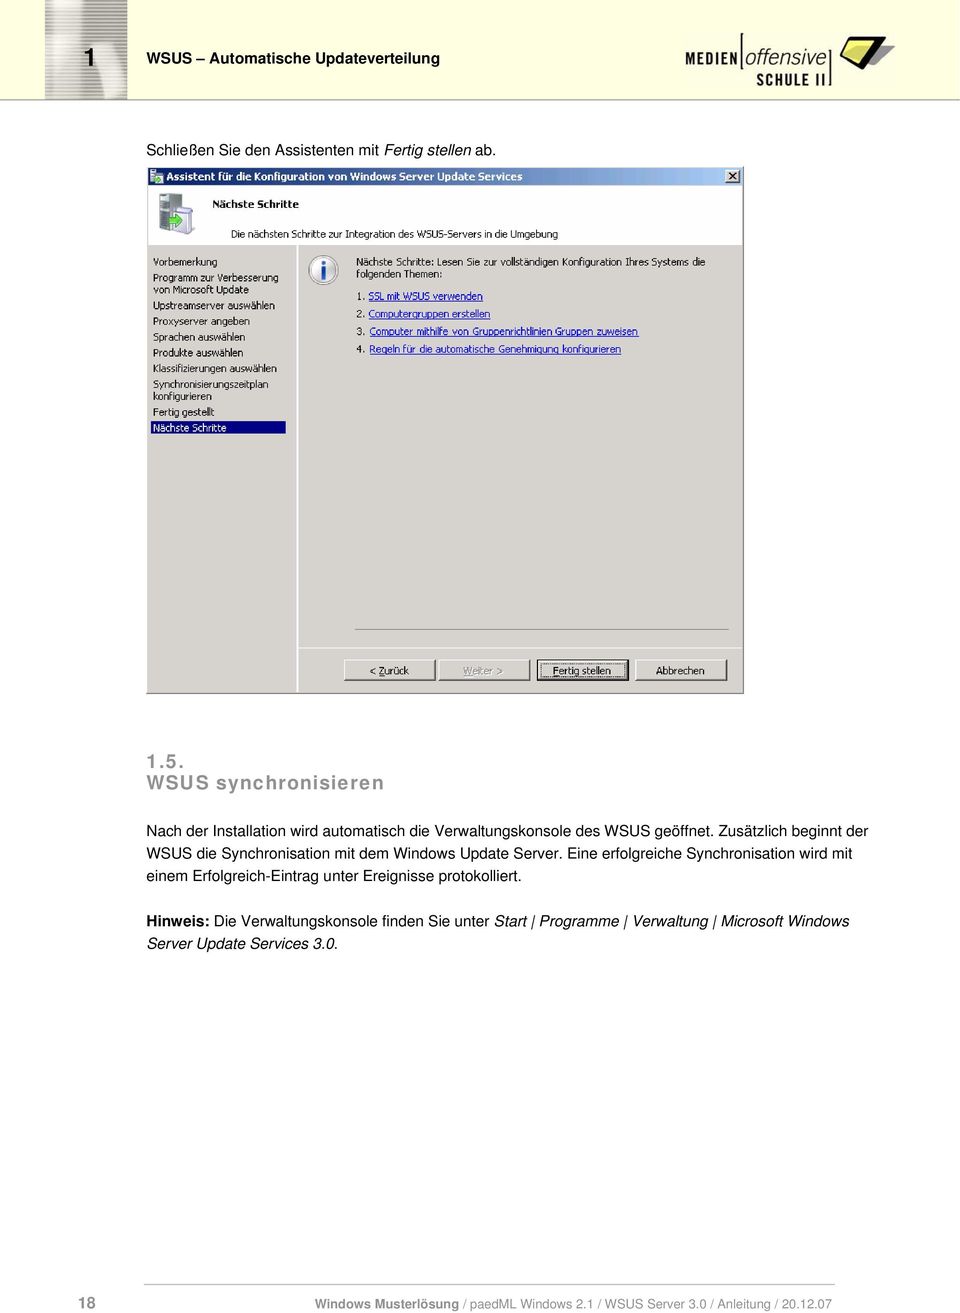 Zusätzlich beginnt der WSUS die Synchronisation mit dem Windows Update Server.